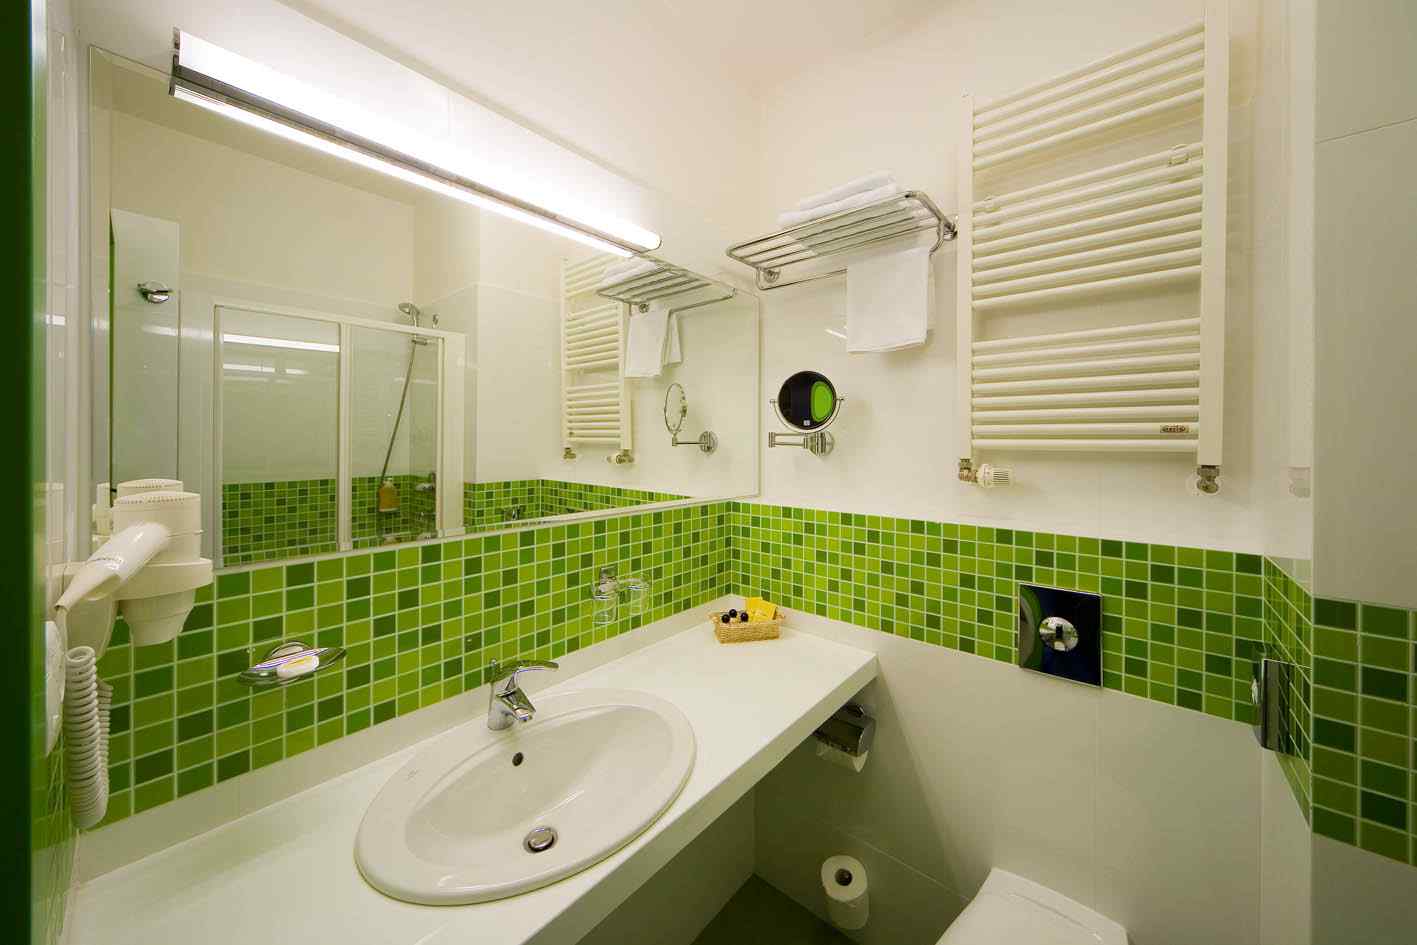 Ванная Комната В Салатовых Тонах Фото